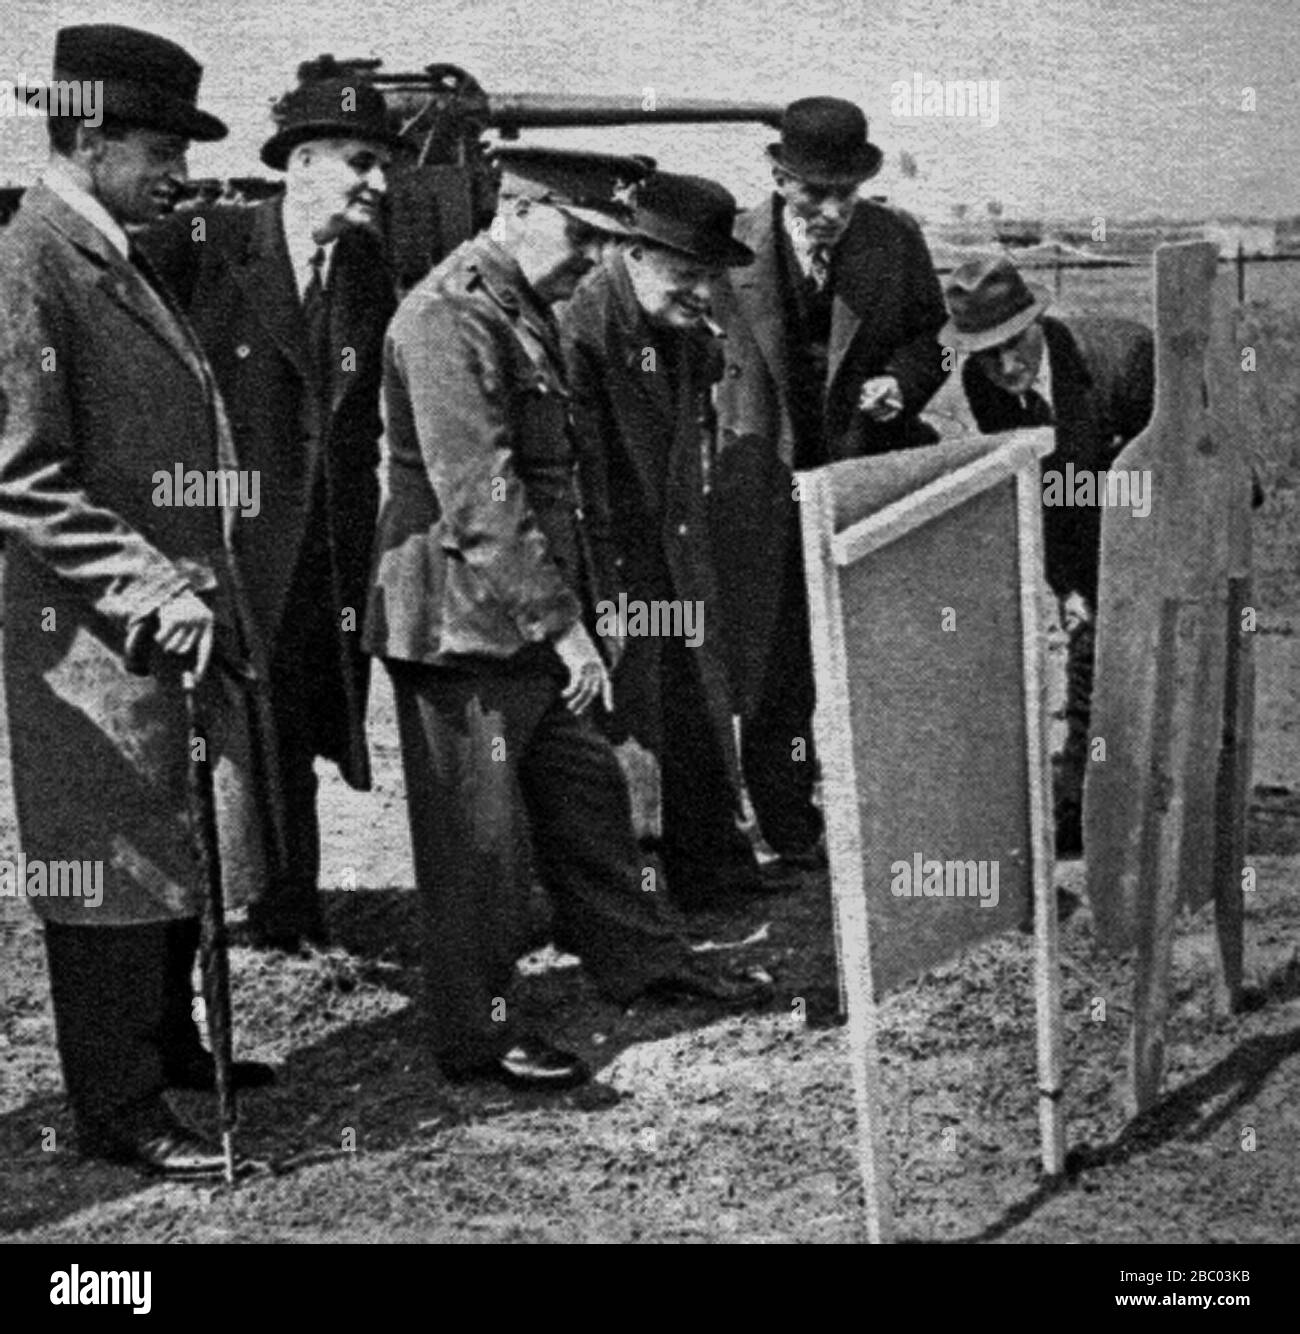 Churchill, Sir Archibald Sinclair e Lord Cherwell controllano la regia di Churchill con una pistola sten a un poligono di tiro. 17 giugno 1941 Foto Stock